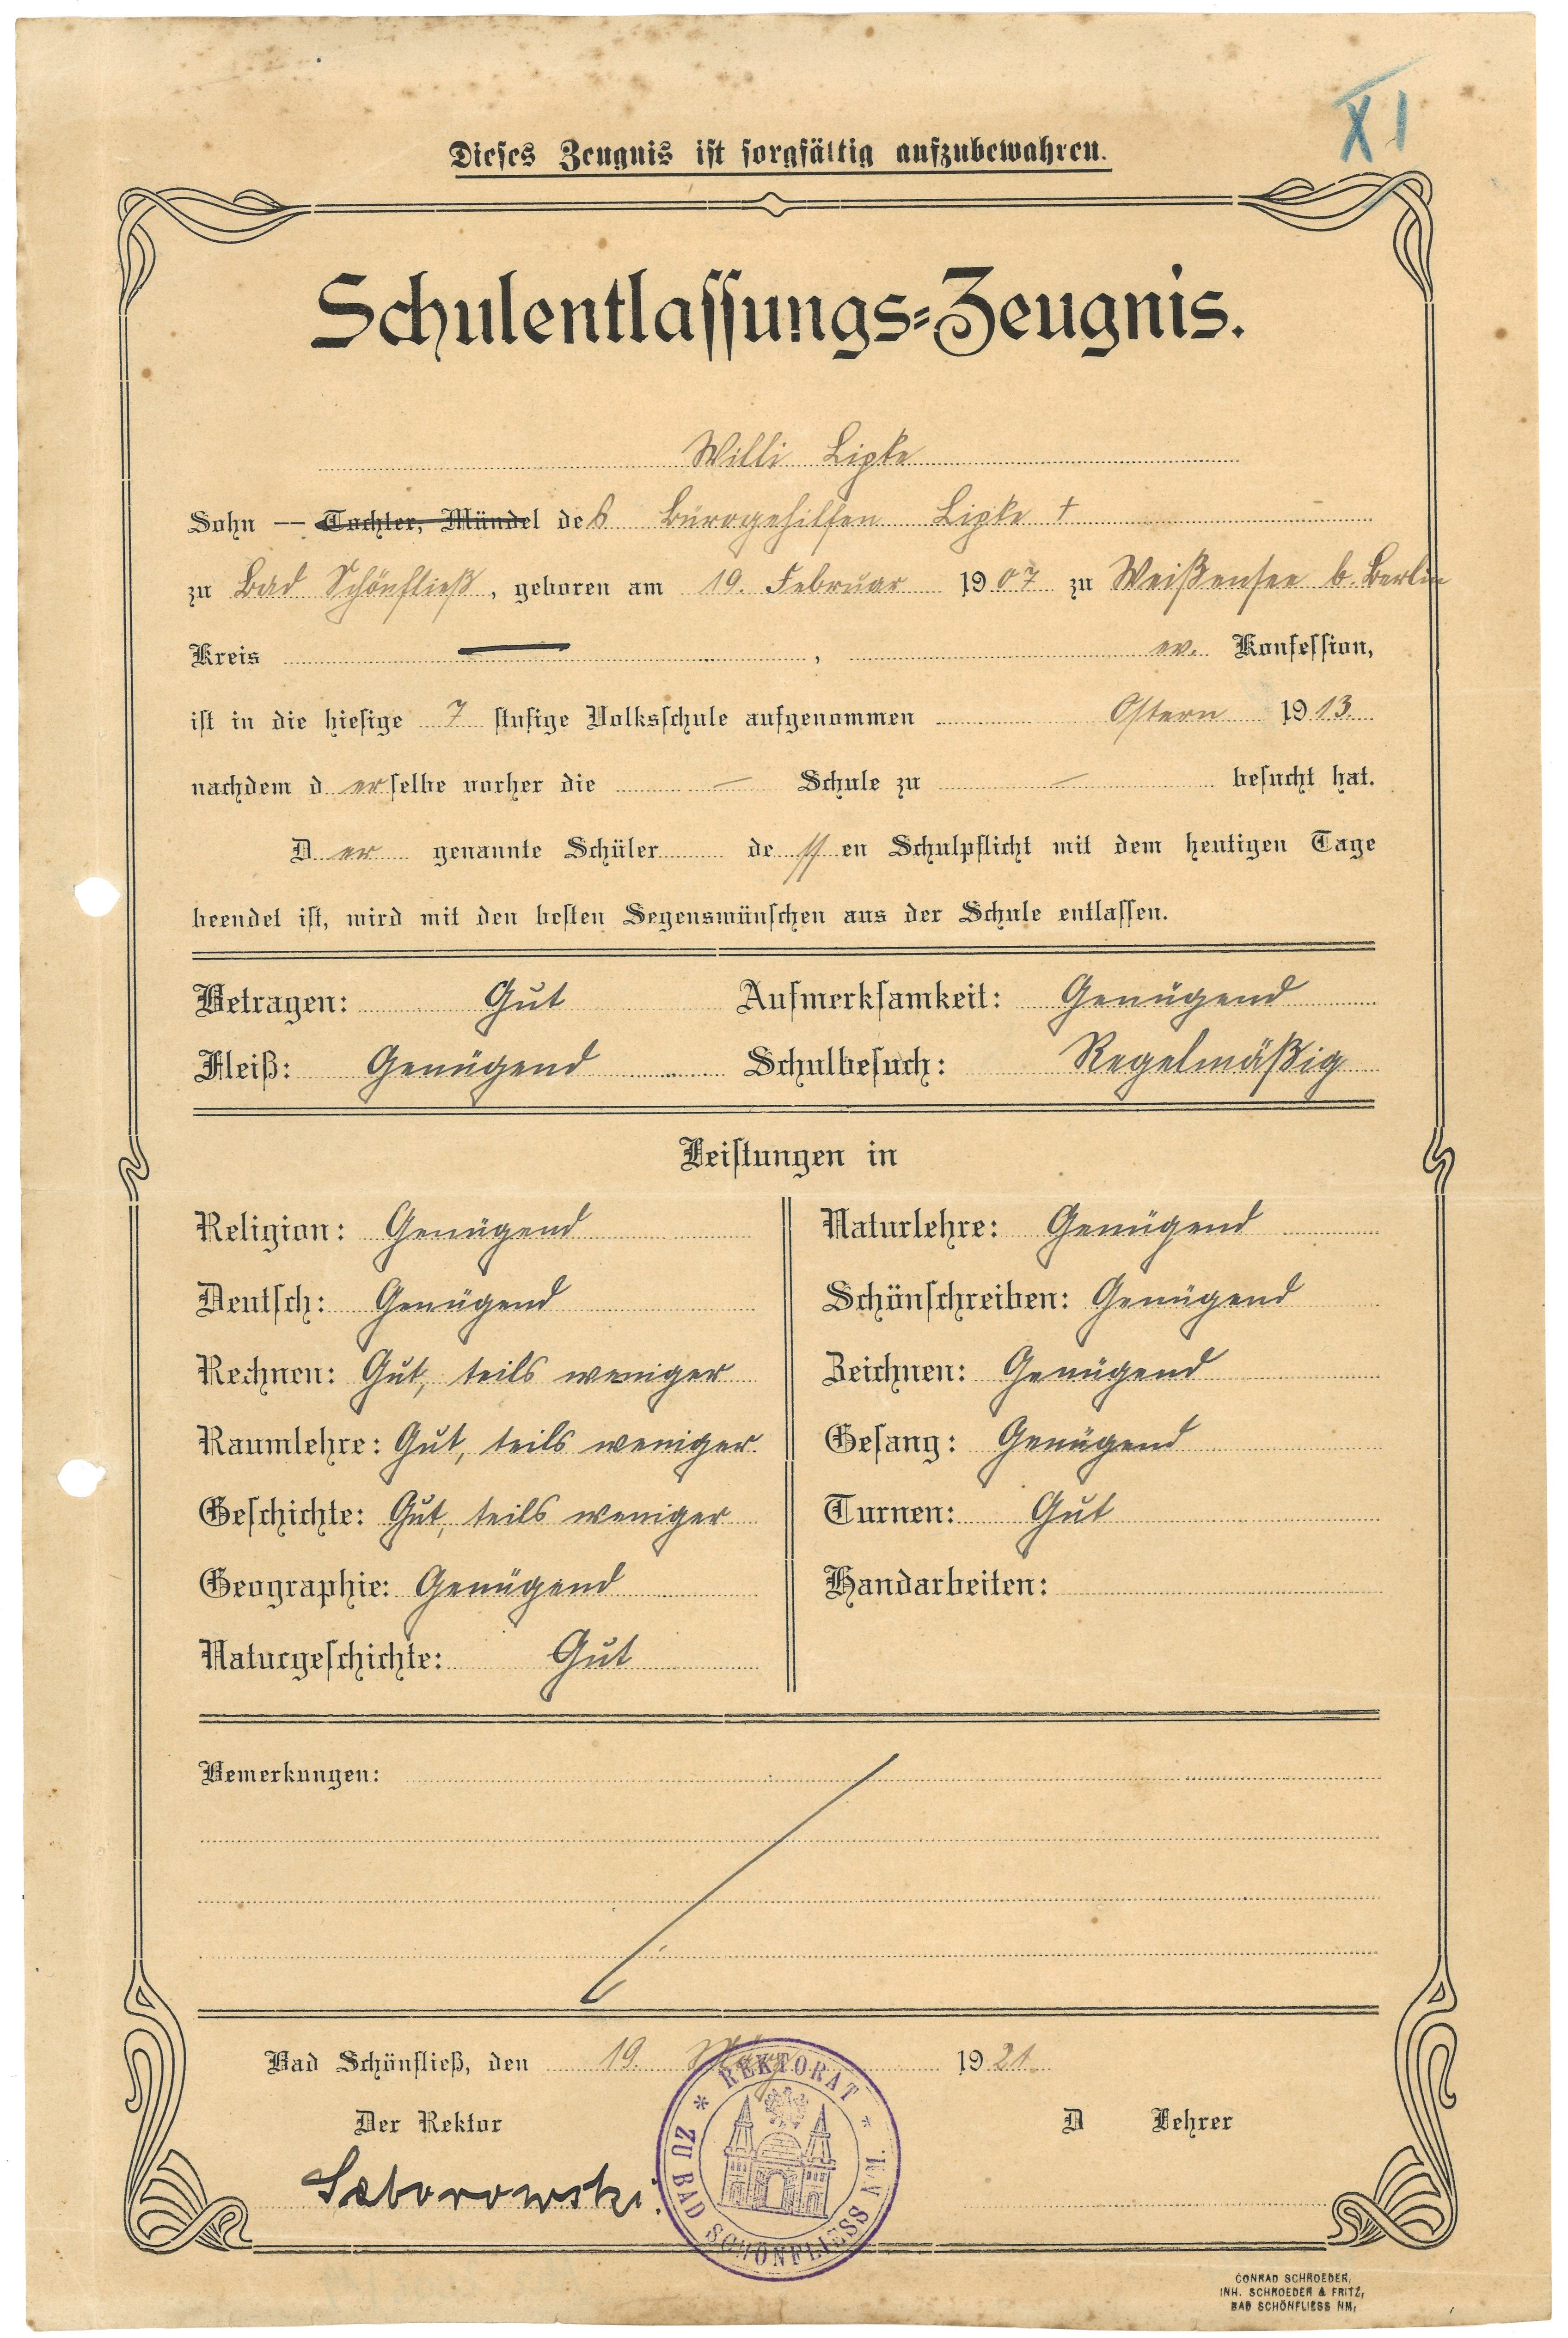 Schulentlassungszeugnis für Willi Lipke in Bad Schönfließ 1921 (Landesgeschichtliche Vereinigung für die Mark Brandenburg e.V., Archiv CC BY)